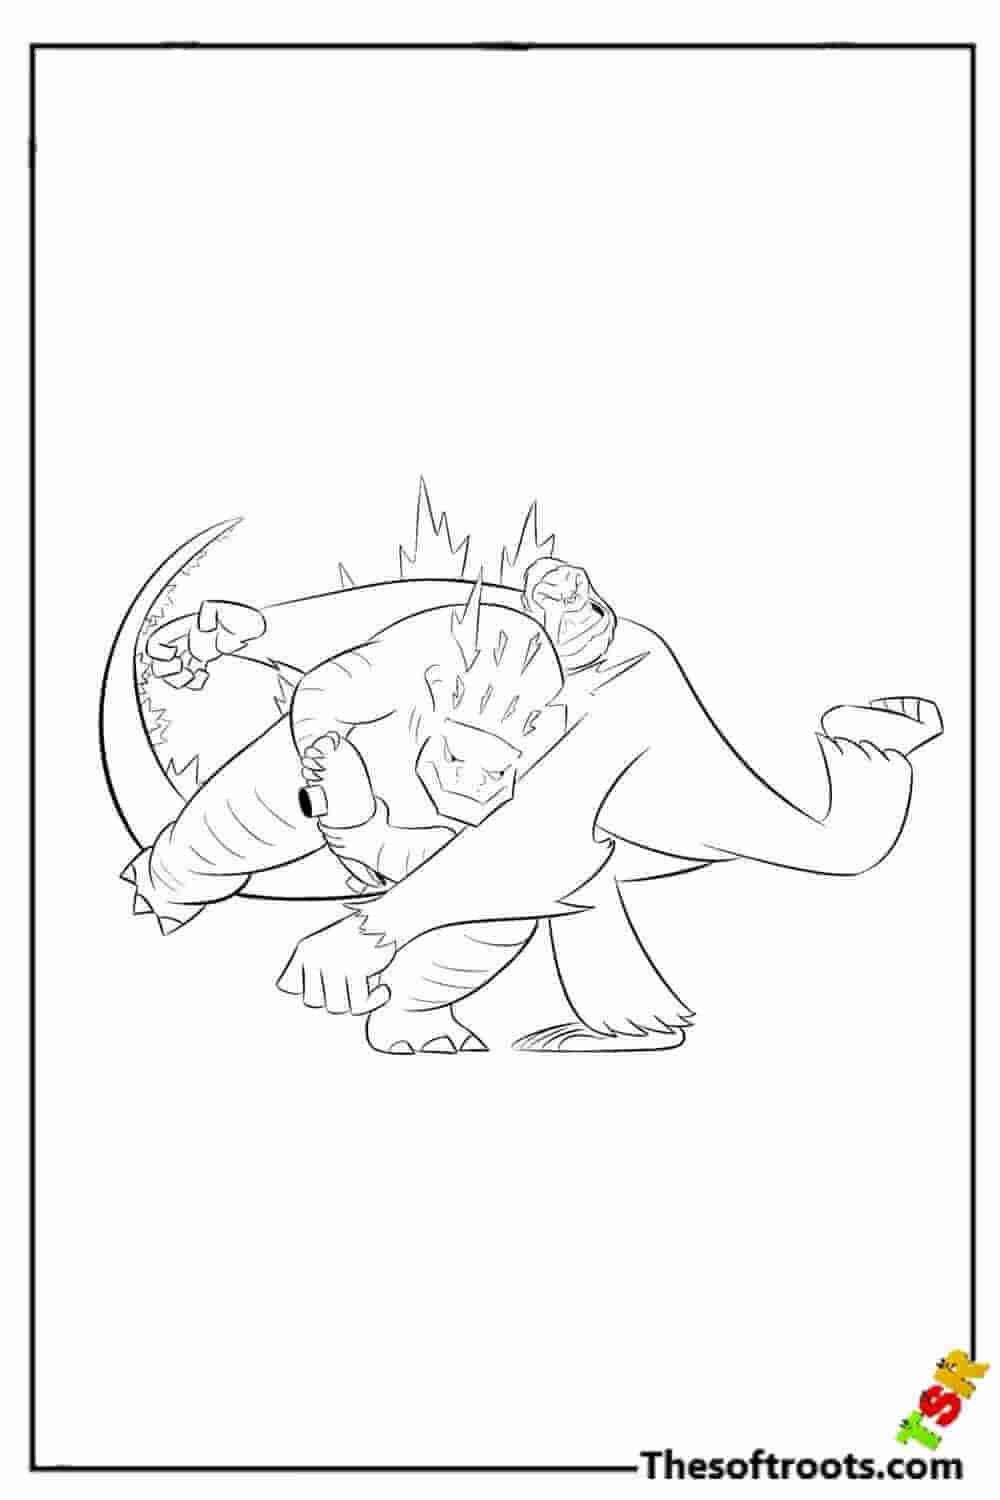 Kong vs. Godzilla coloring pages